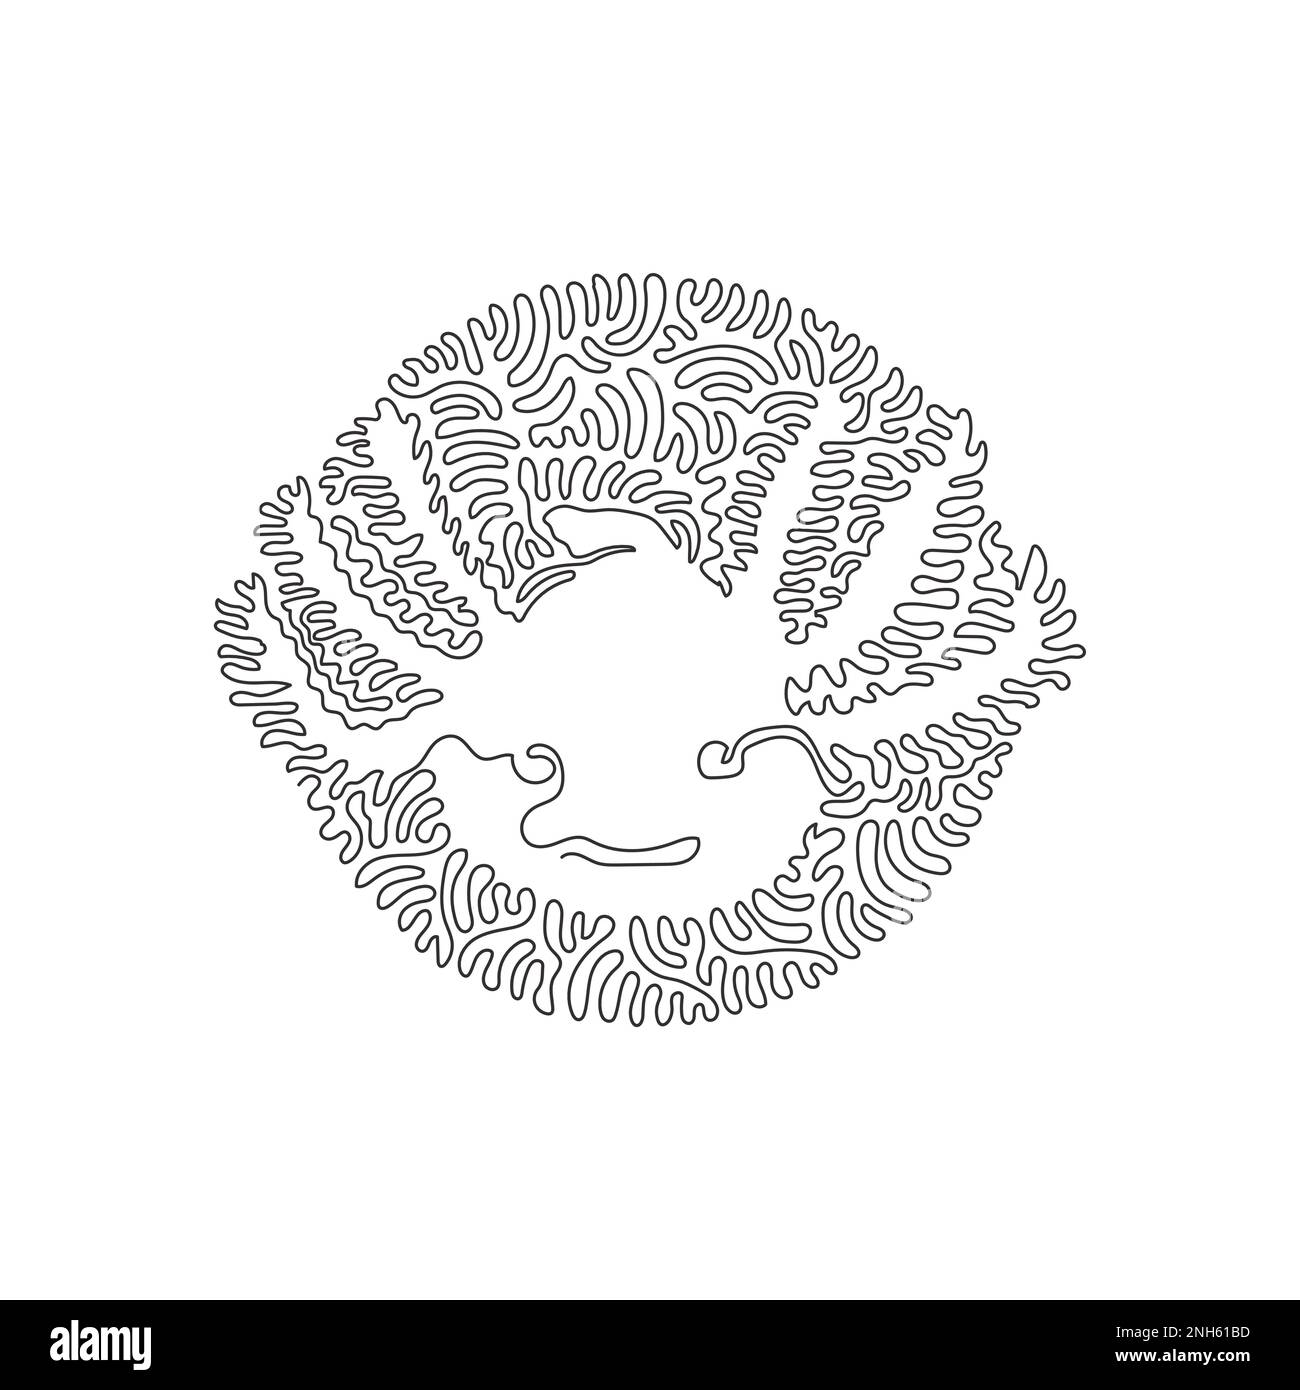 Tracé continu d'une ligne de courbe d'axolotl exotique. Illustration d'un vecteur de contour modifiable sur une seule ligne d'axolotl convivial Illustration de Vecteur